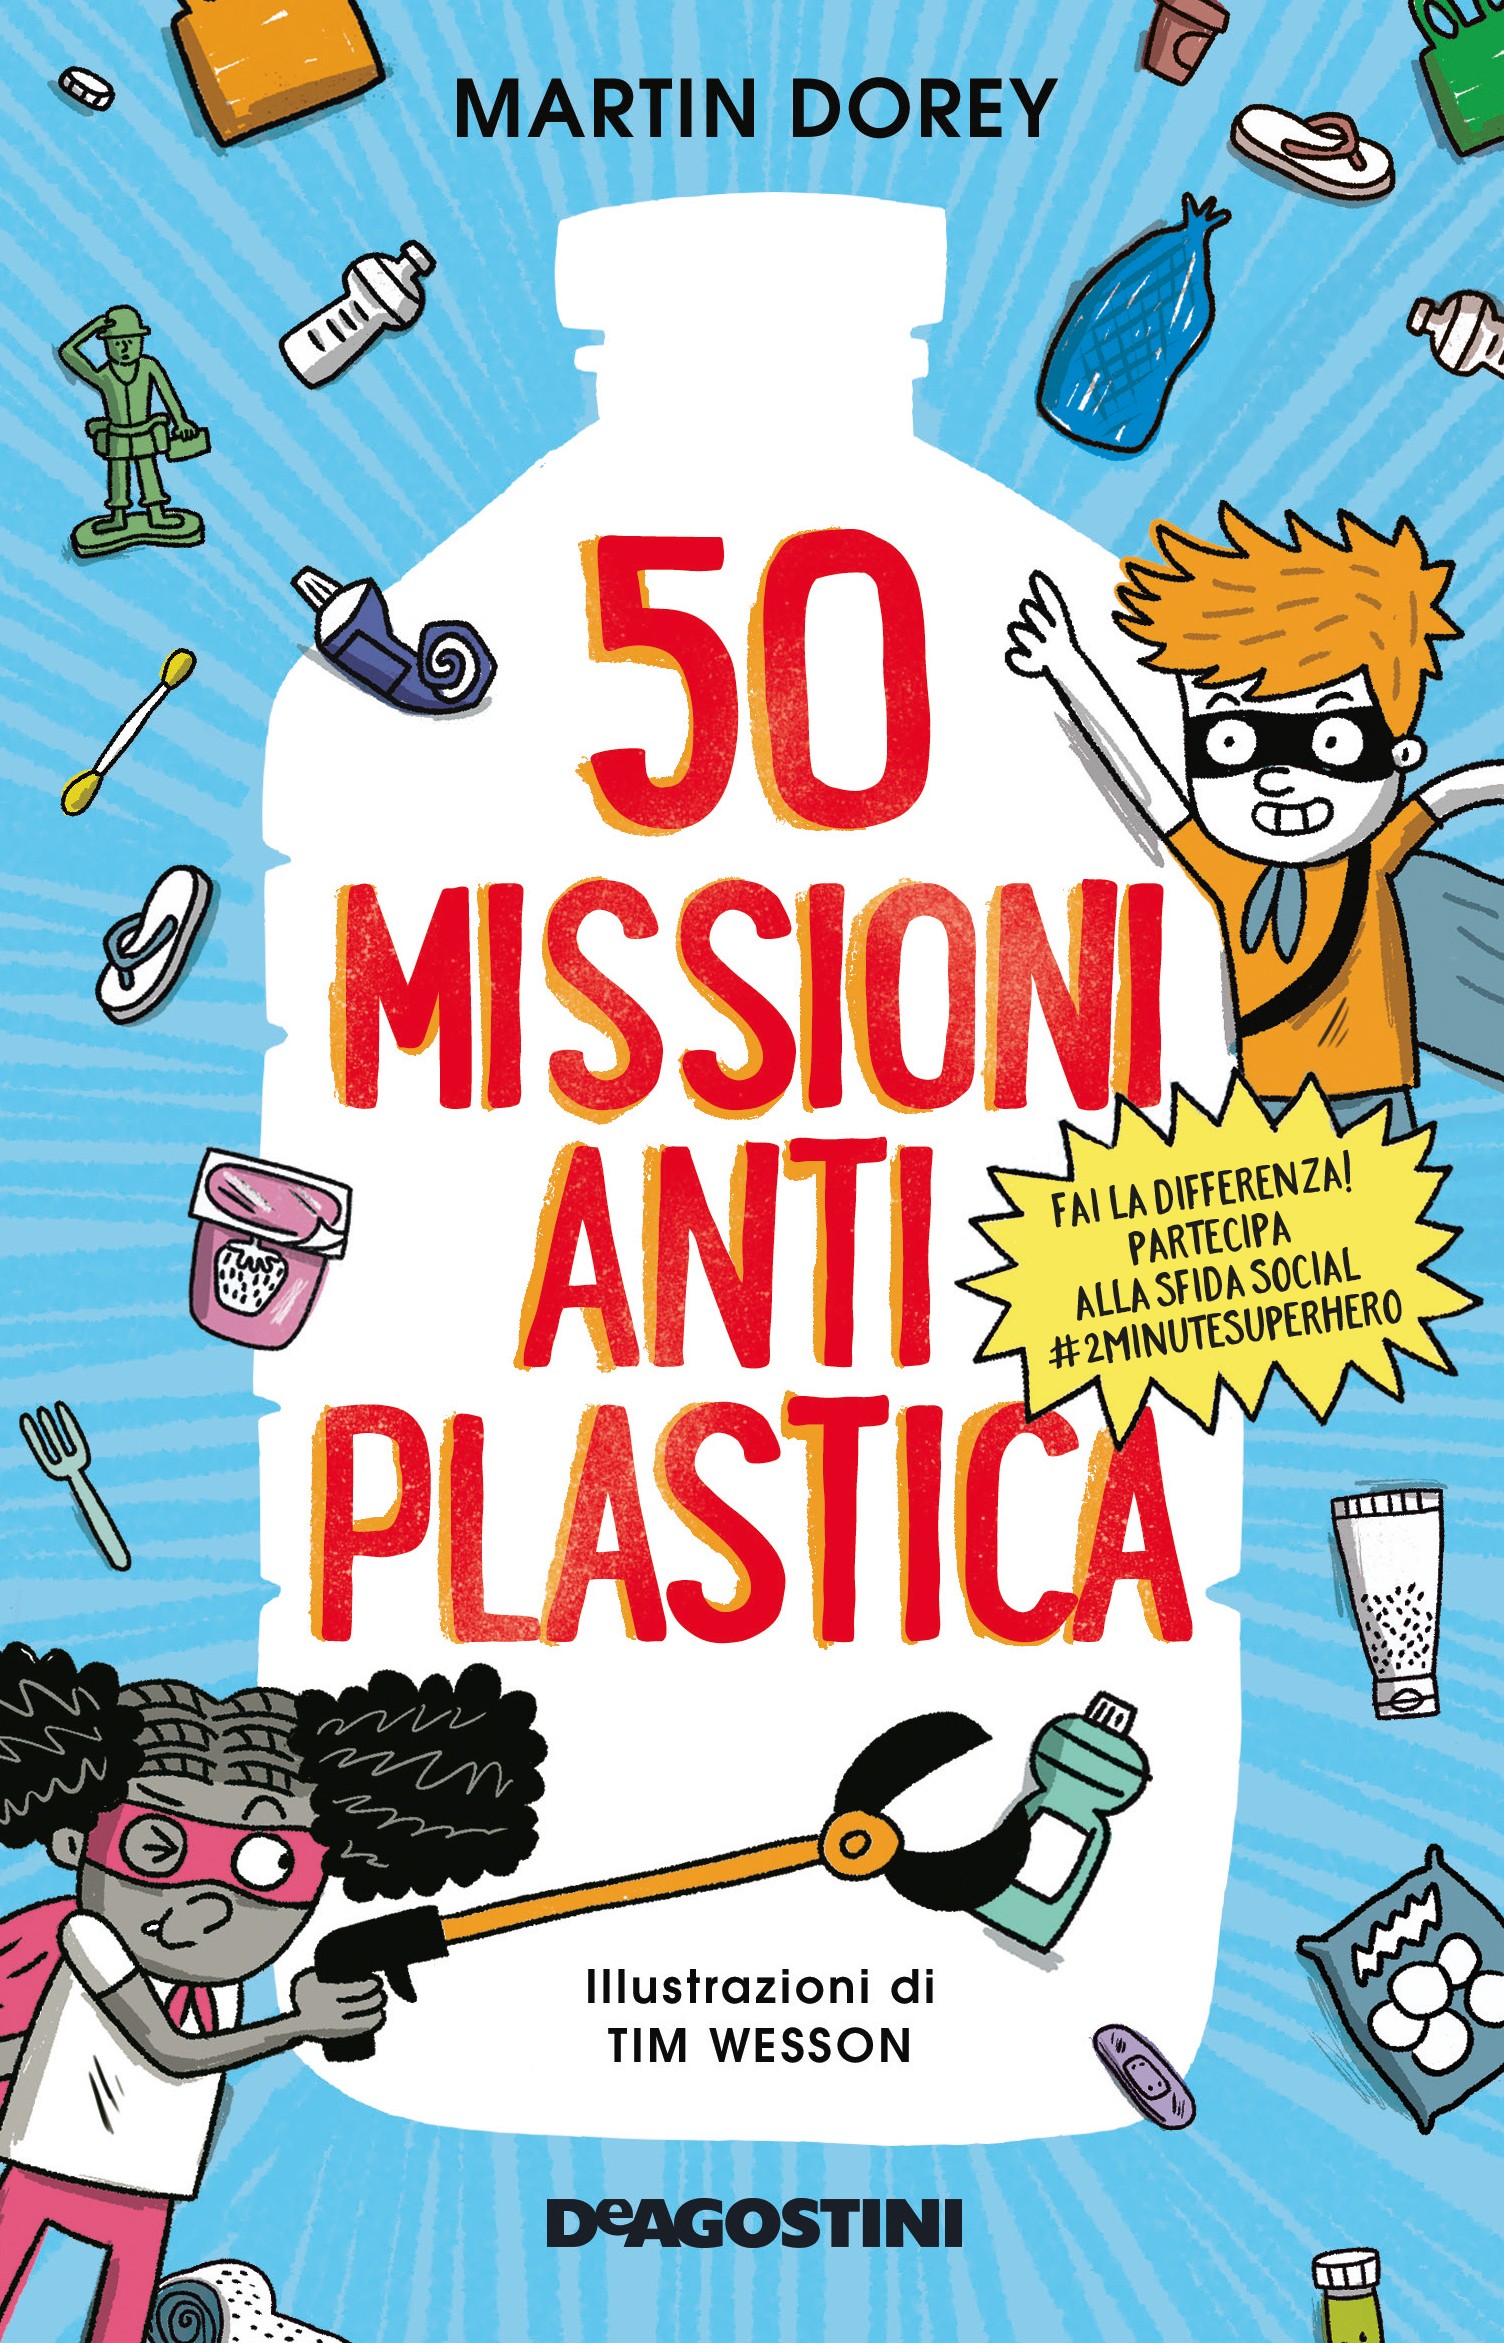 50 missioni antiplastica - Librerie.coop